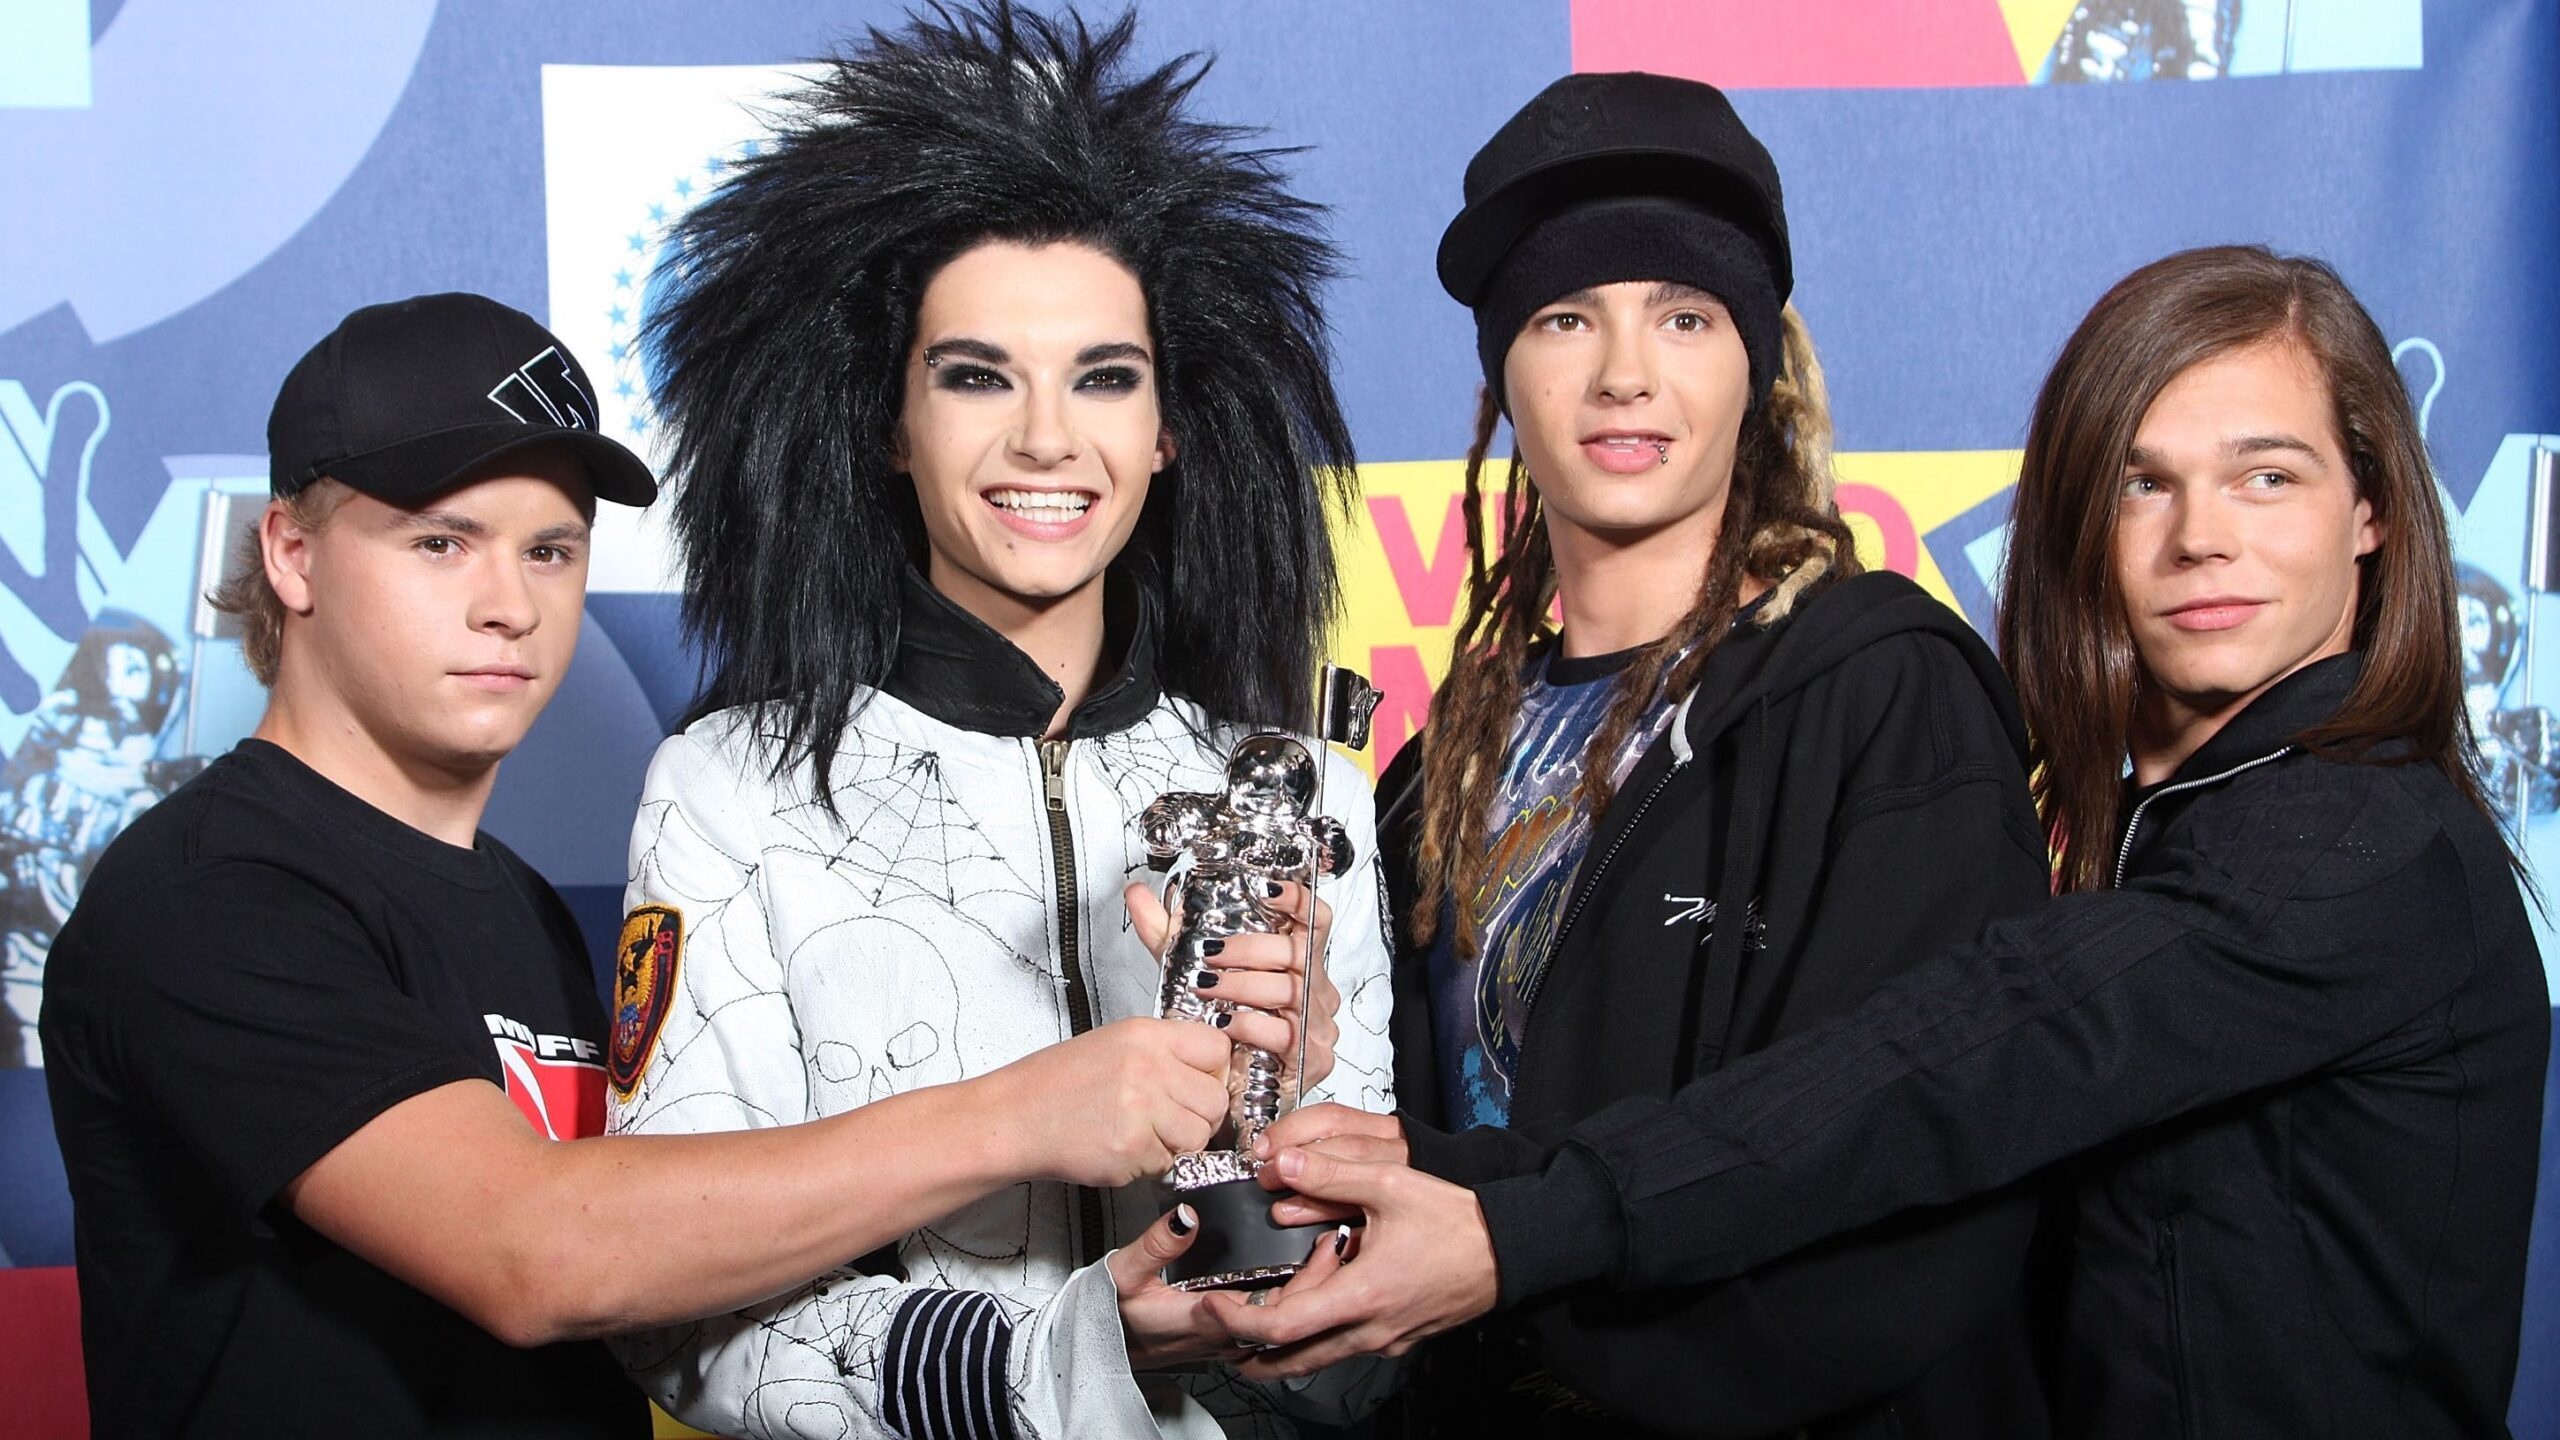 Tokio Hotel: Members: Bill Kaulitz, Tom Kaulitz, Gustav Schafer, Georg Listing. 2560x1440 HD Background.